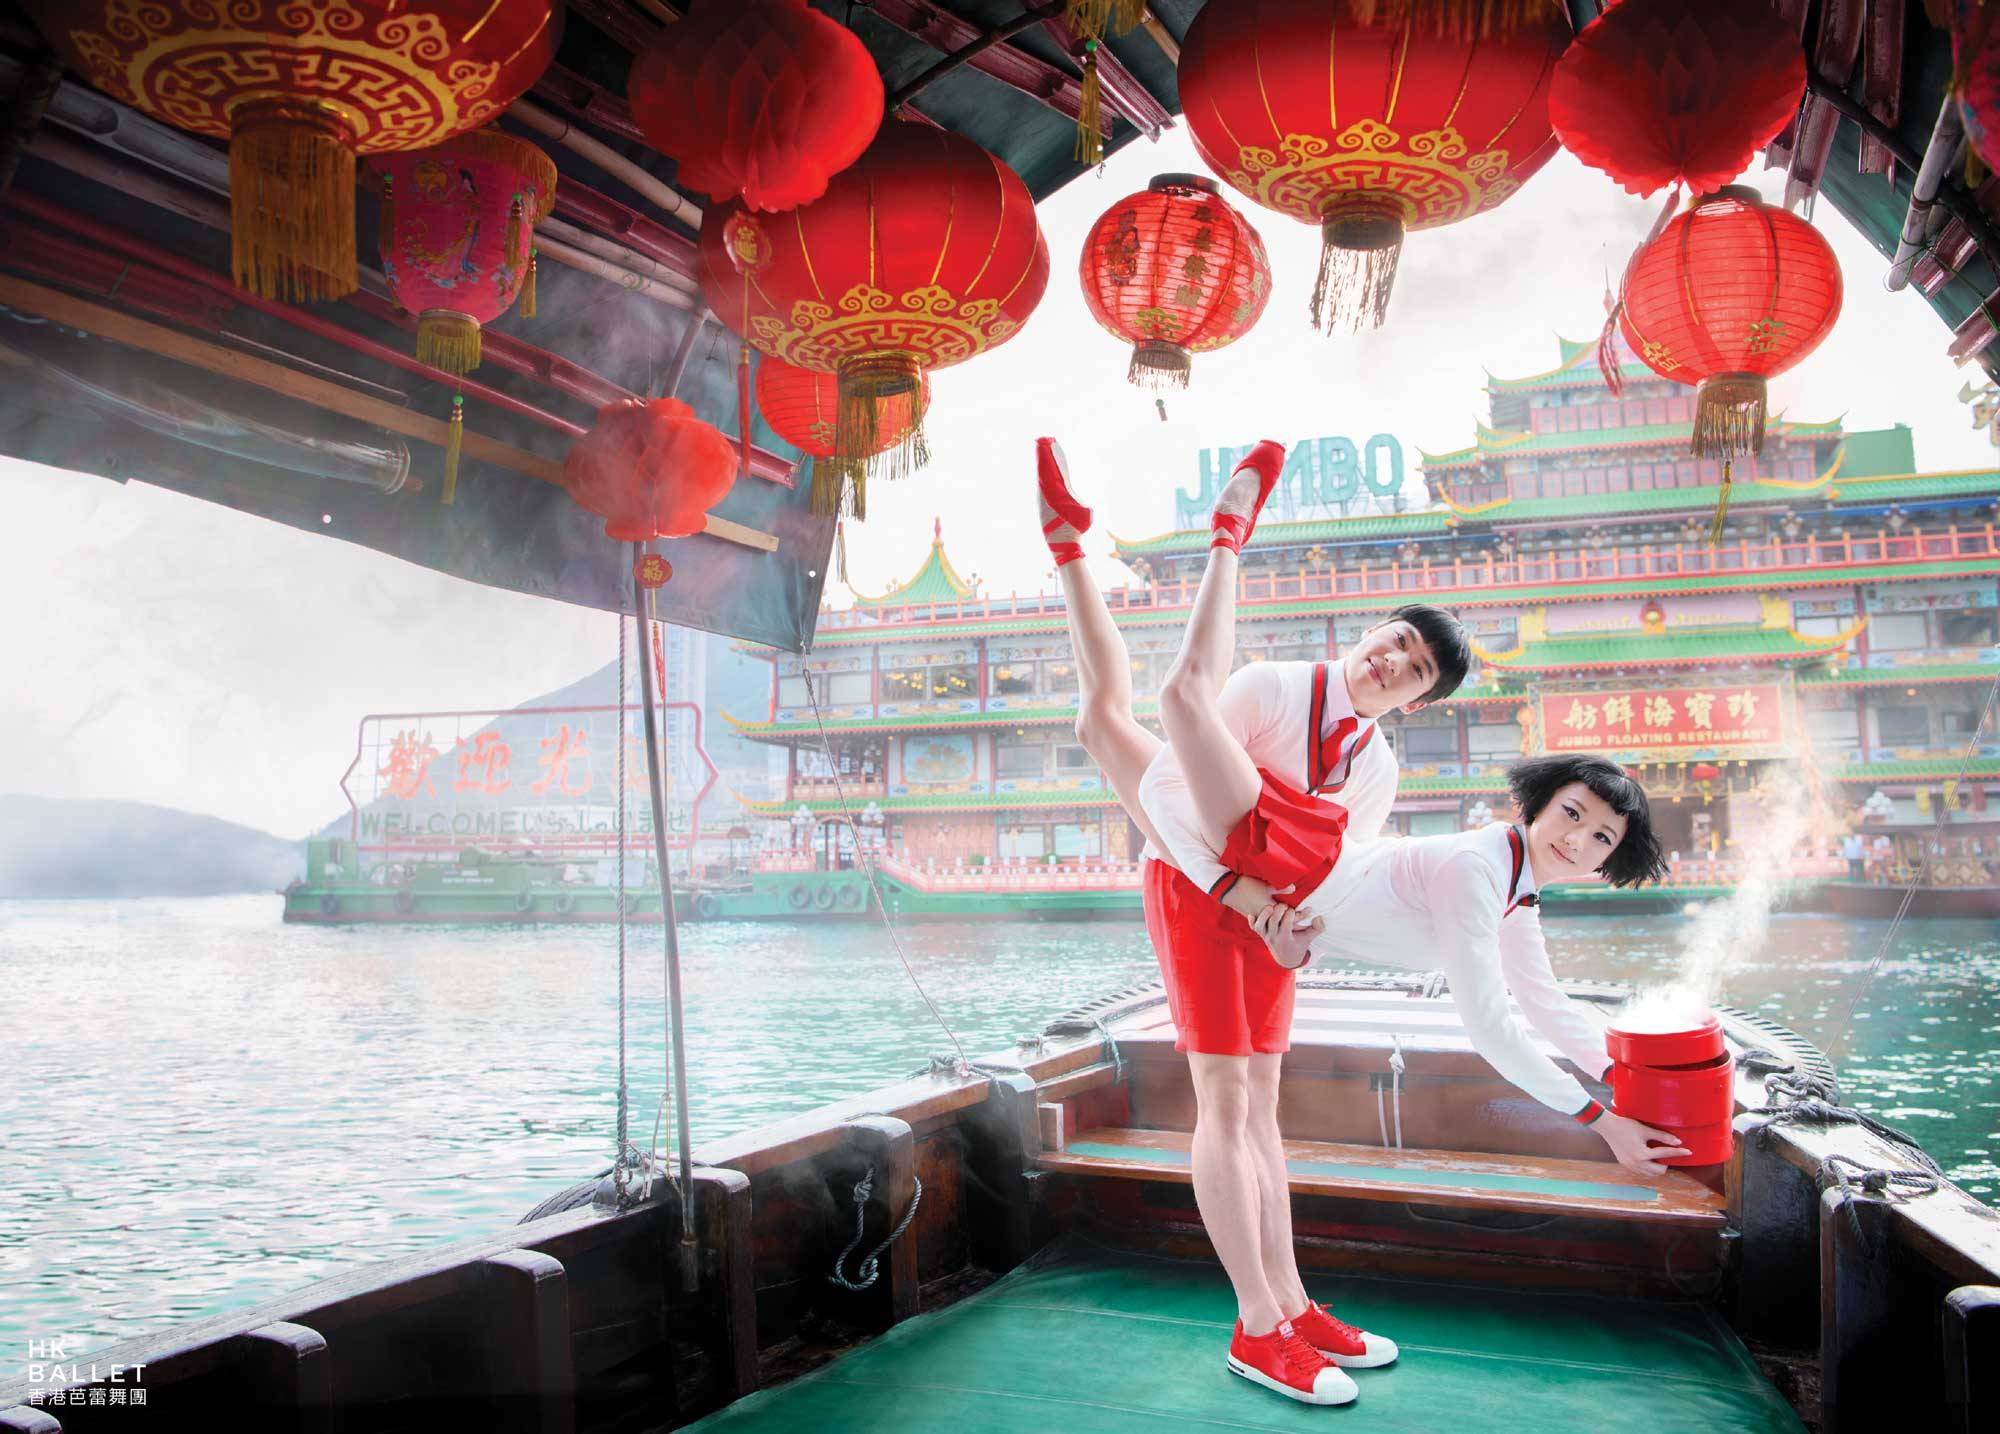 Яркая рекламная кампания Гонконгского балета